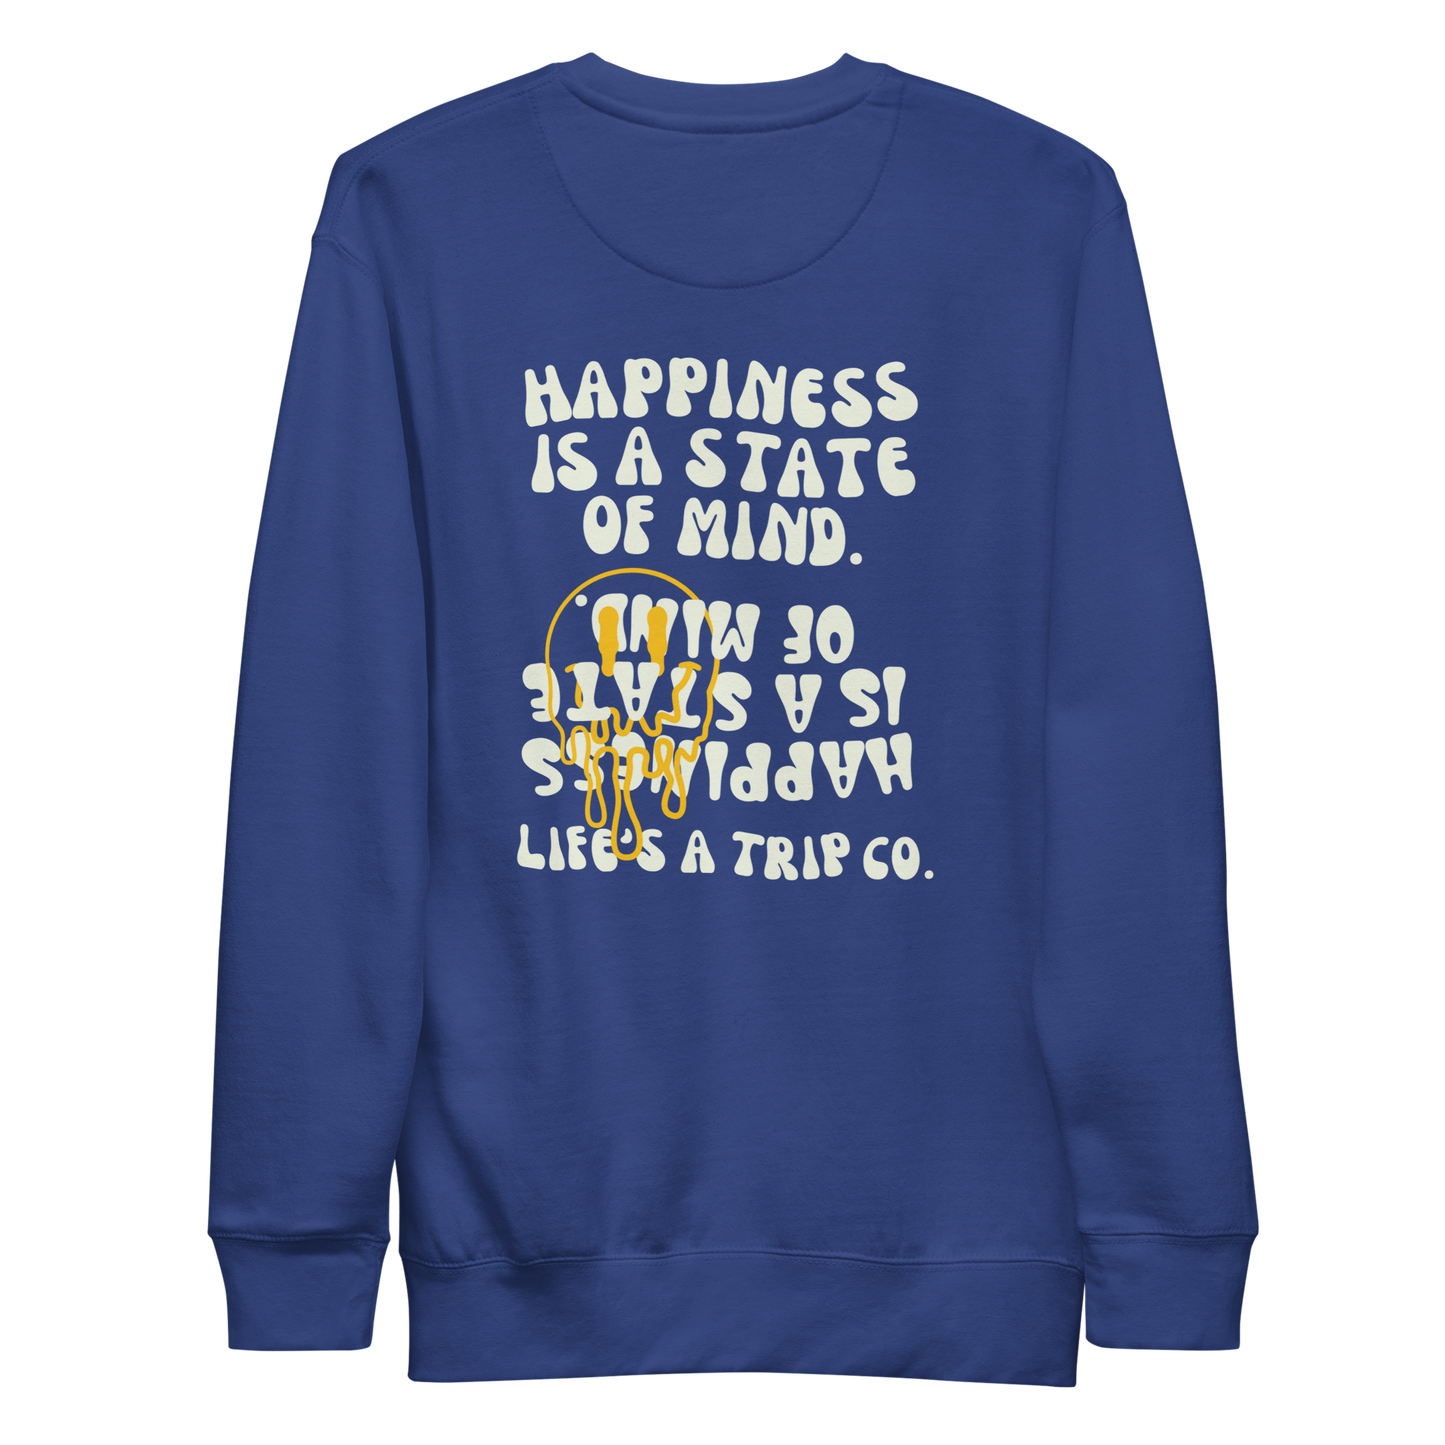 Life's a Trip Co.™ Premium Sweatshirt | Cotton Heritage M2480 front/back